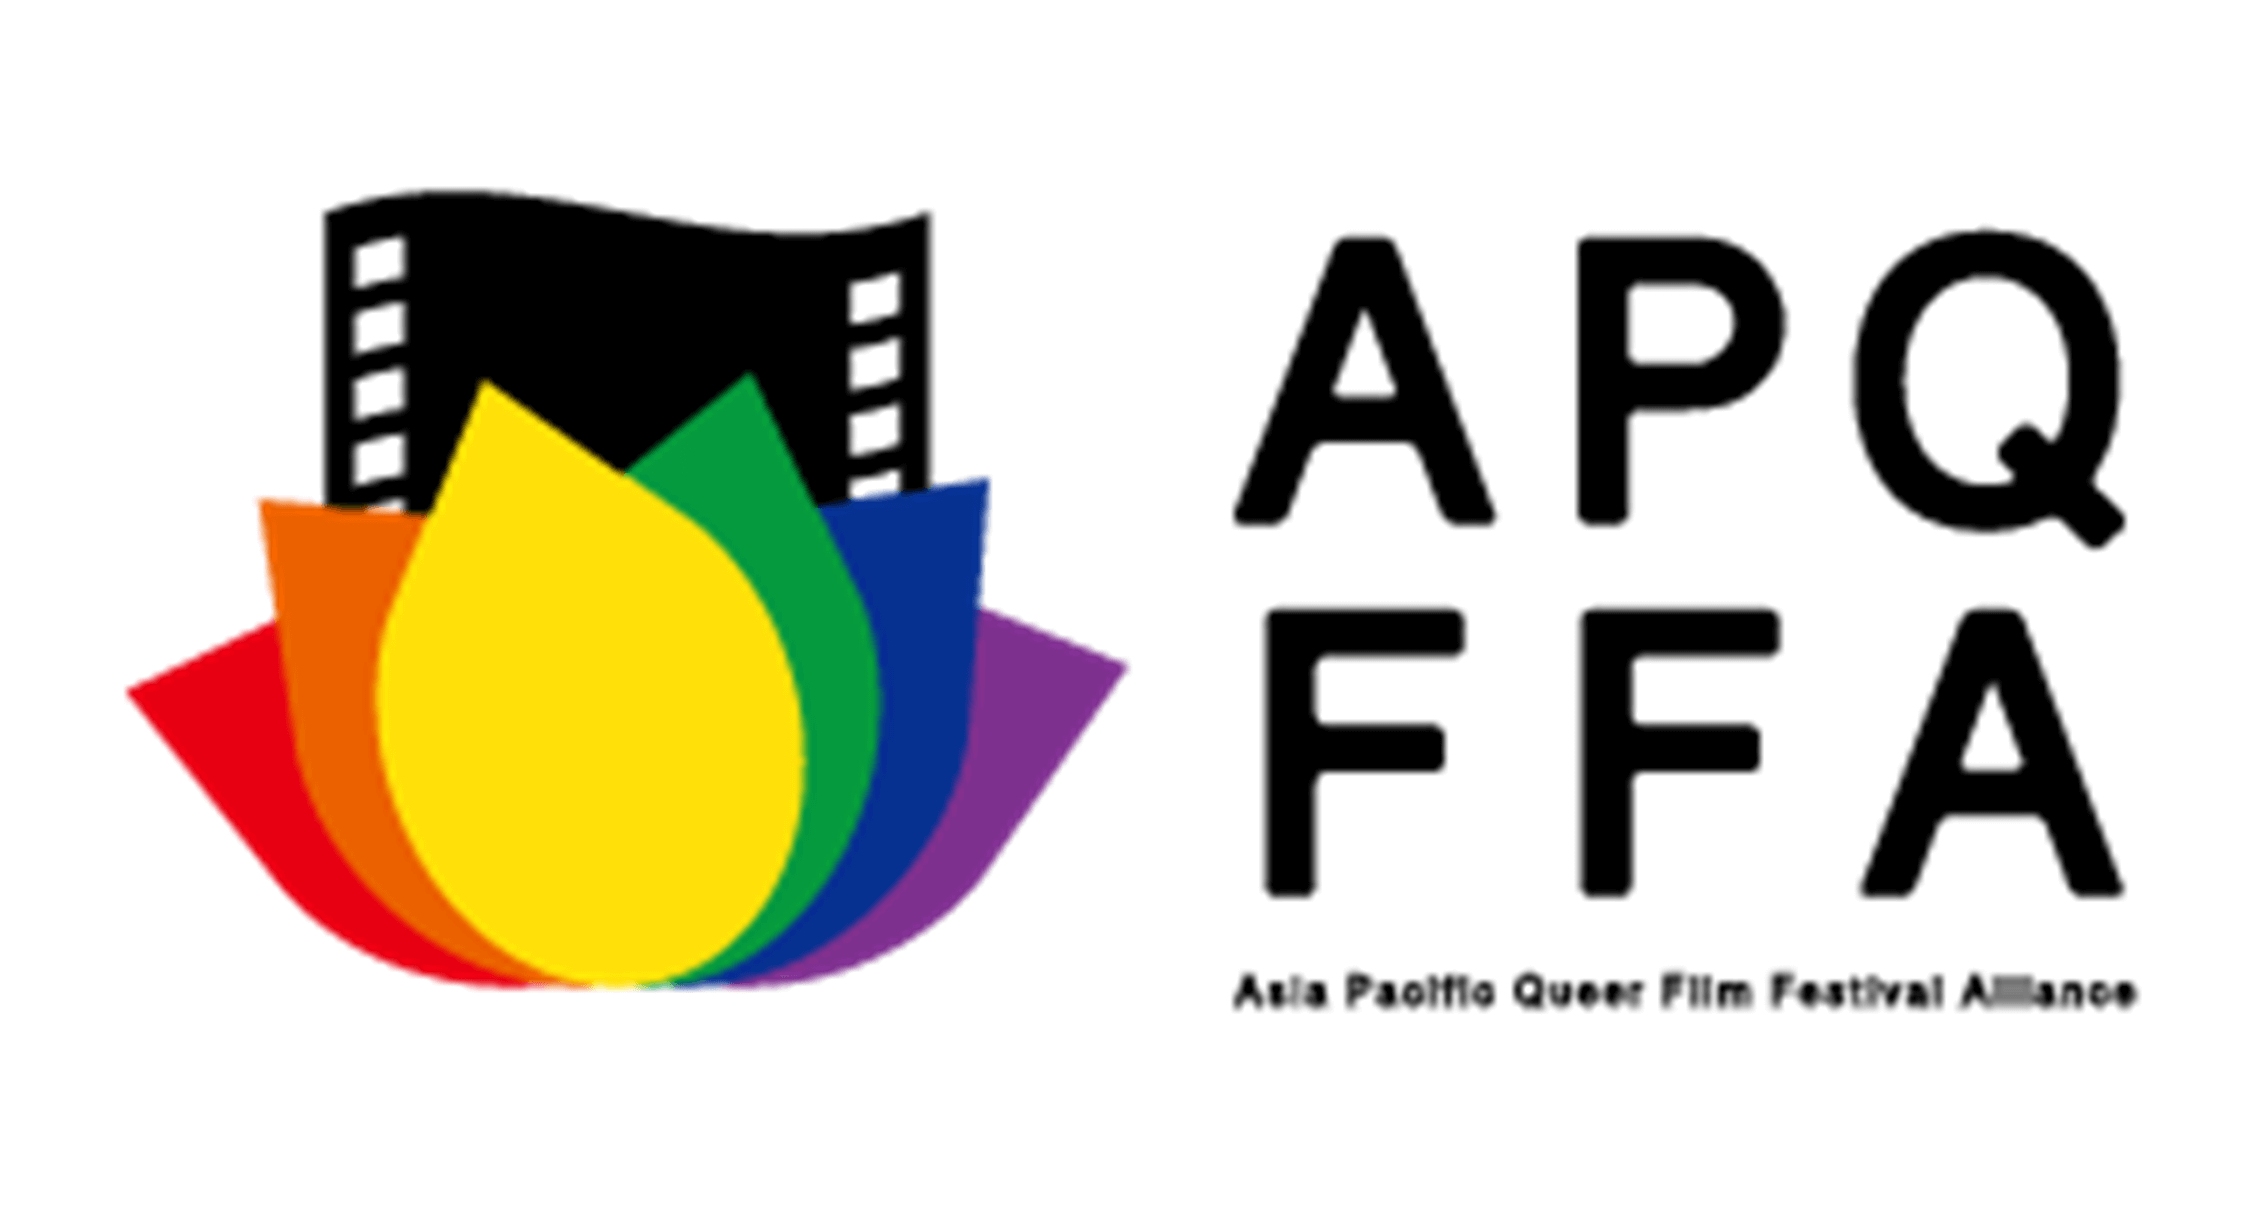 亚洲同志影展联盟 APQFFA